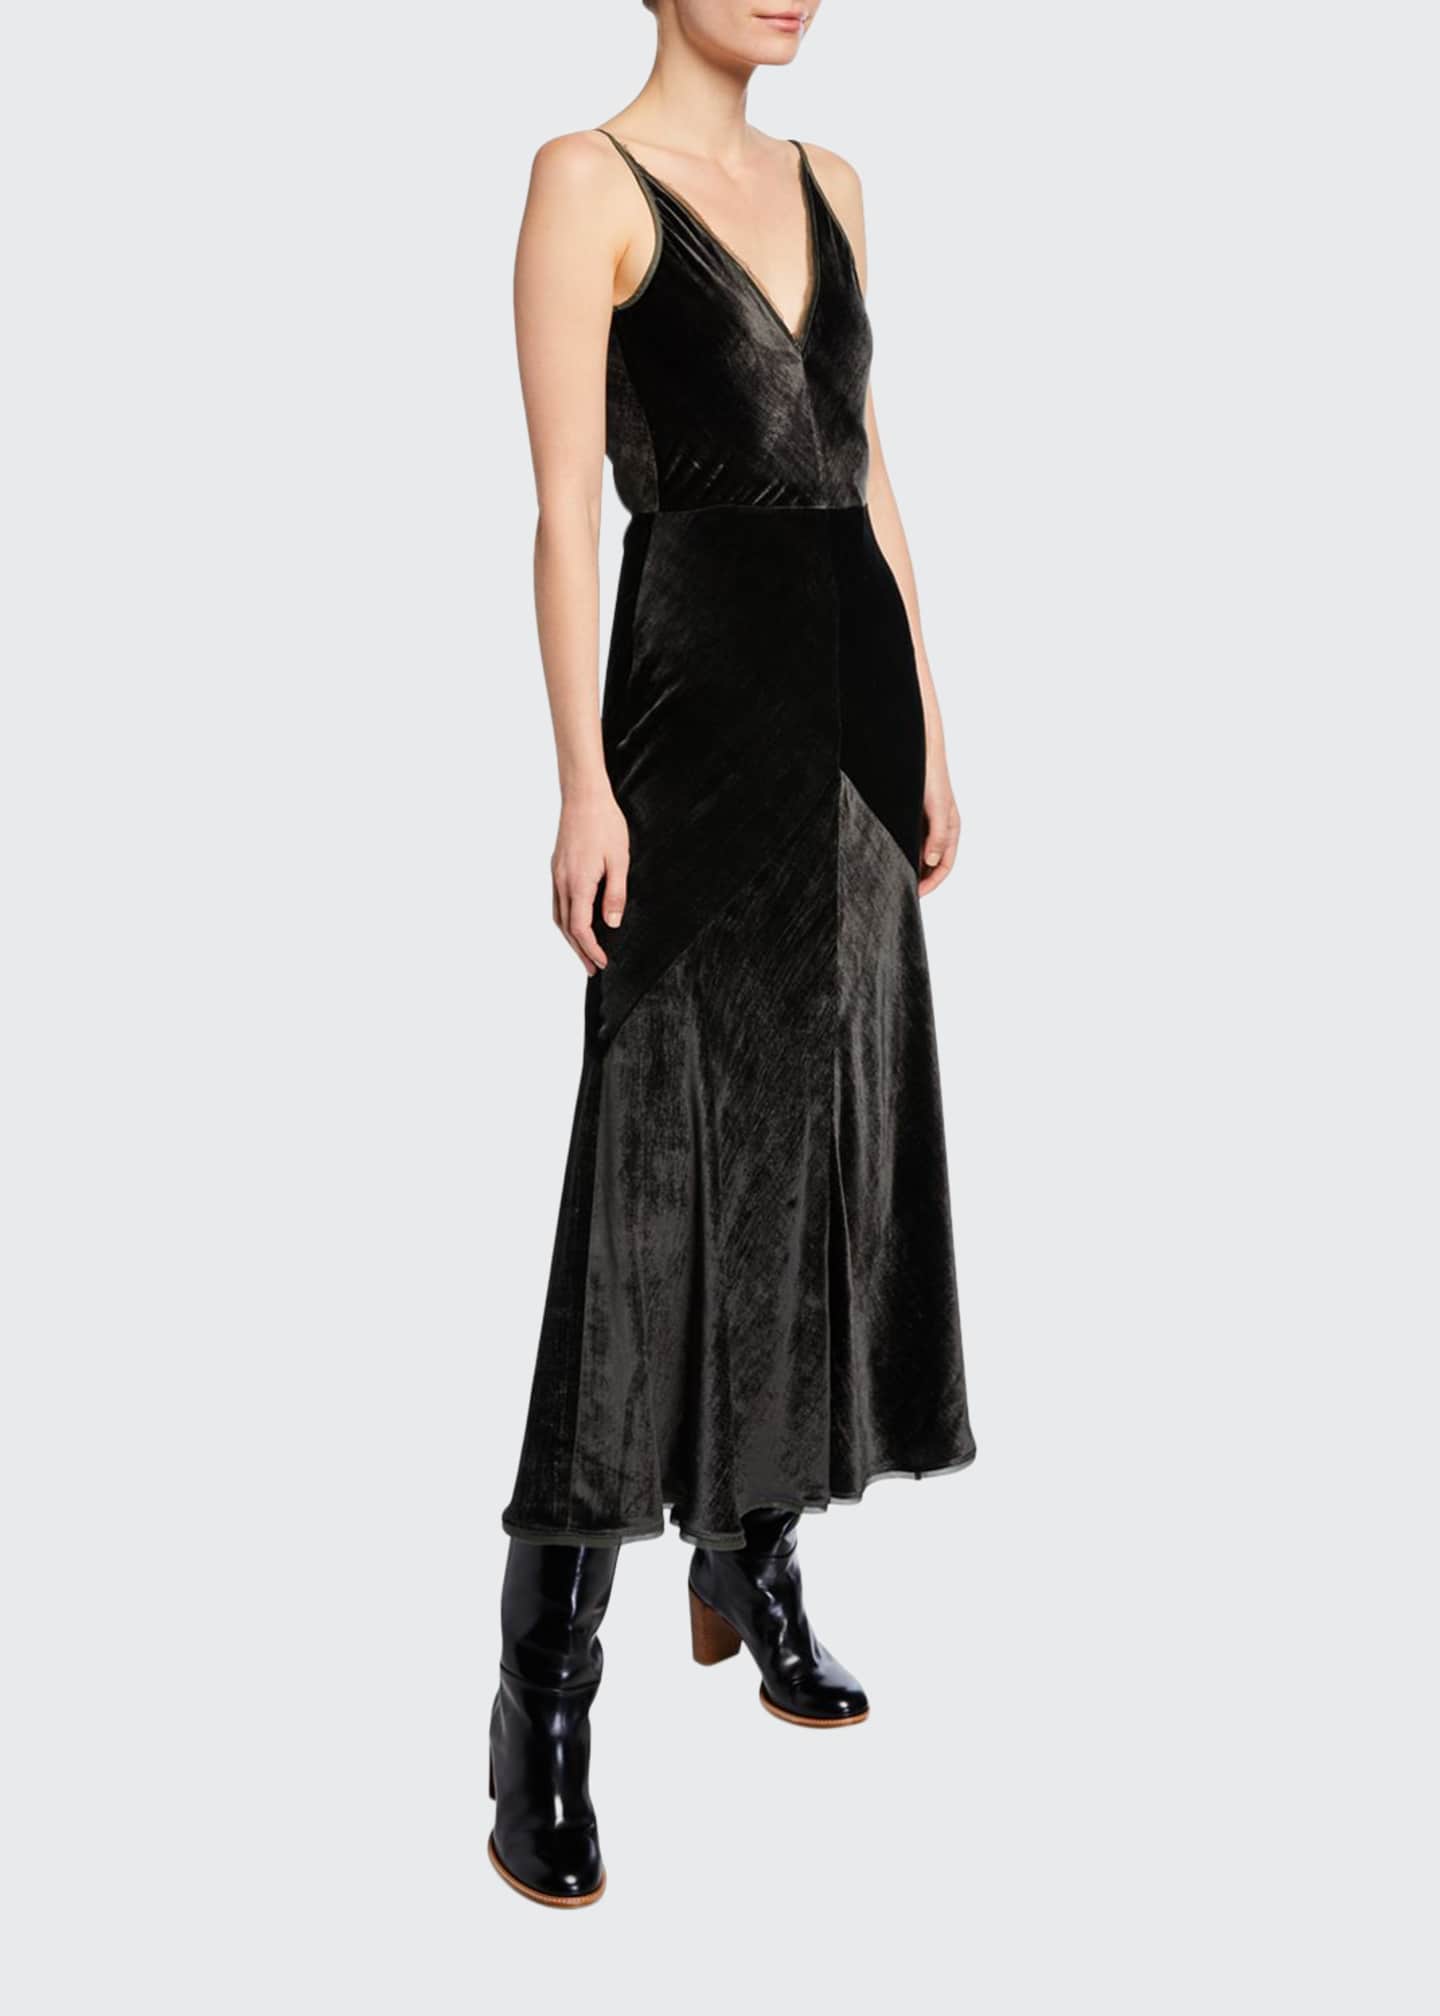 3.1 Phillip Lim Sleeveless Paneled Velvet Dress, Sapphire